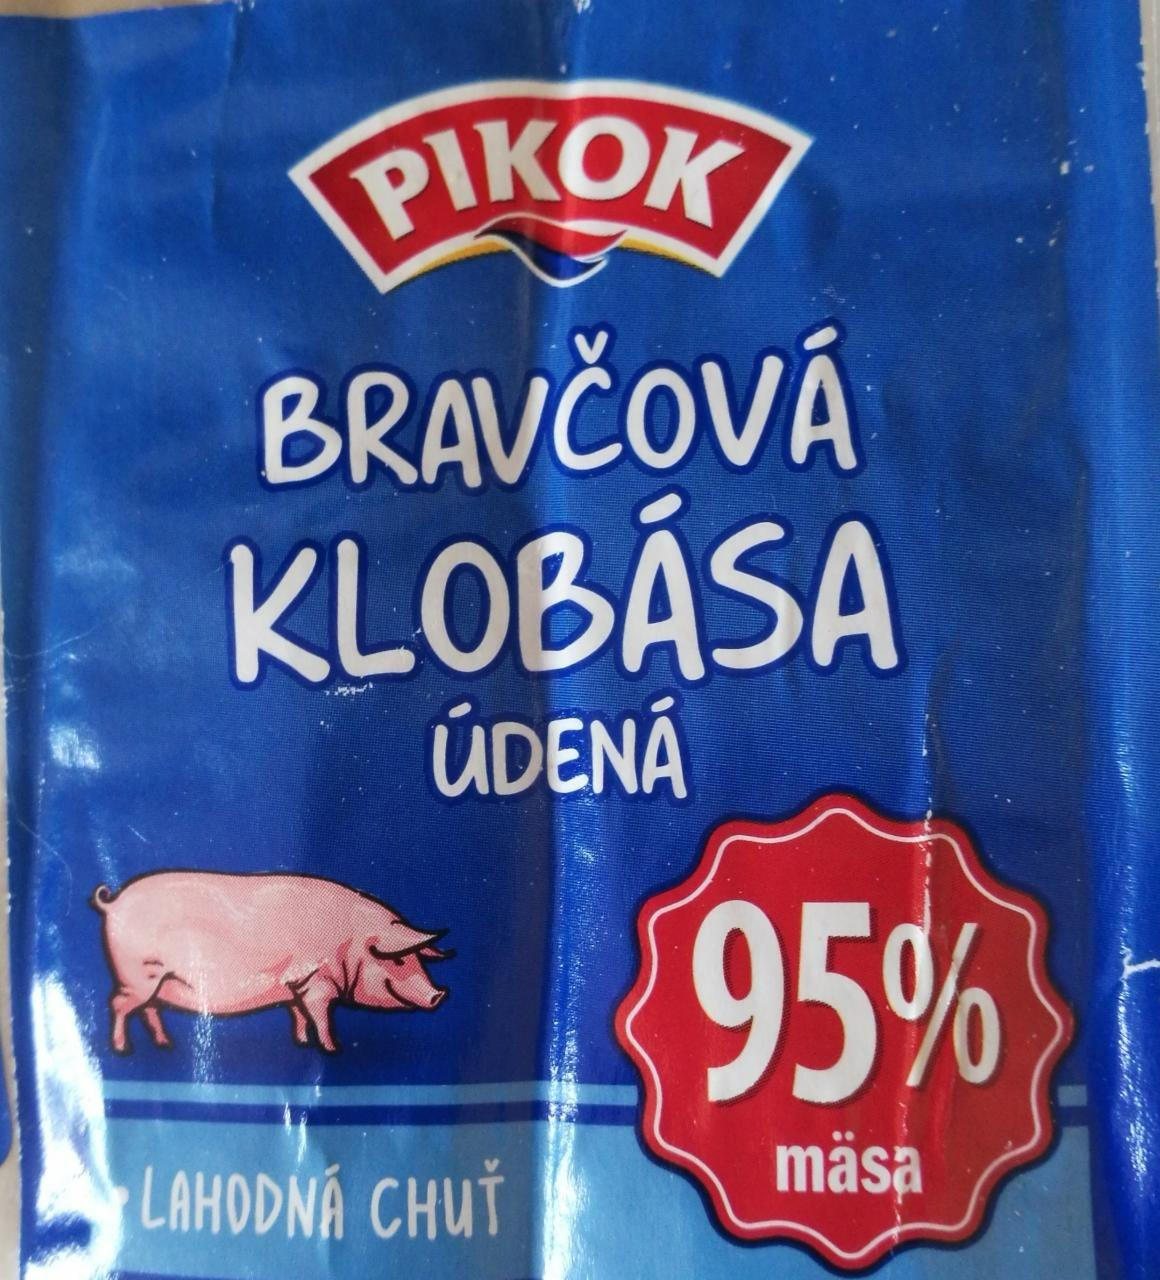 Fotografie - Bravčová klobása údená 95% mäsa Pikok